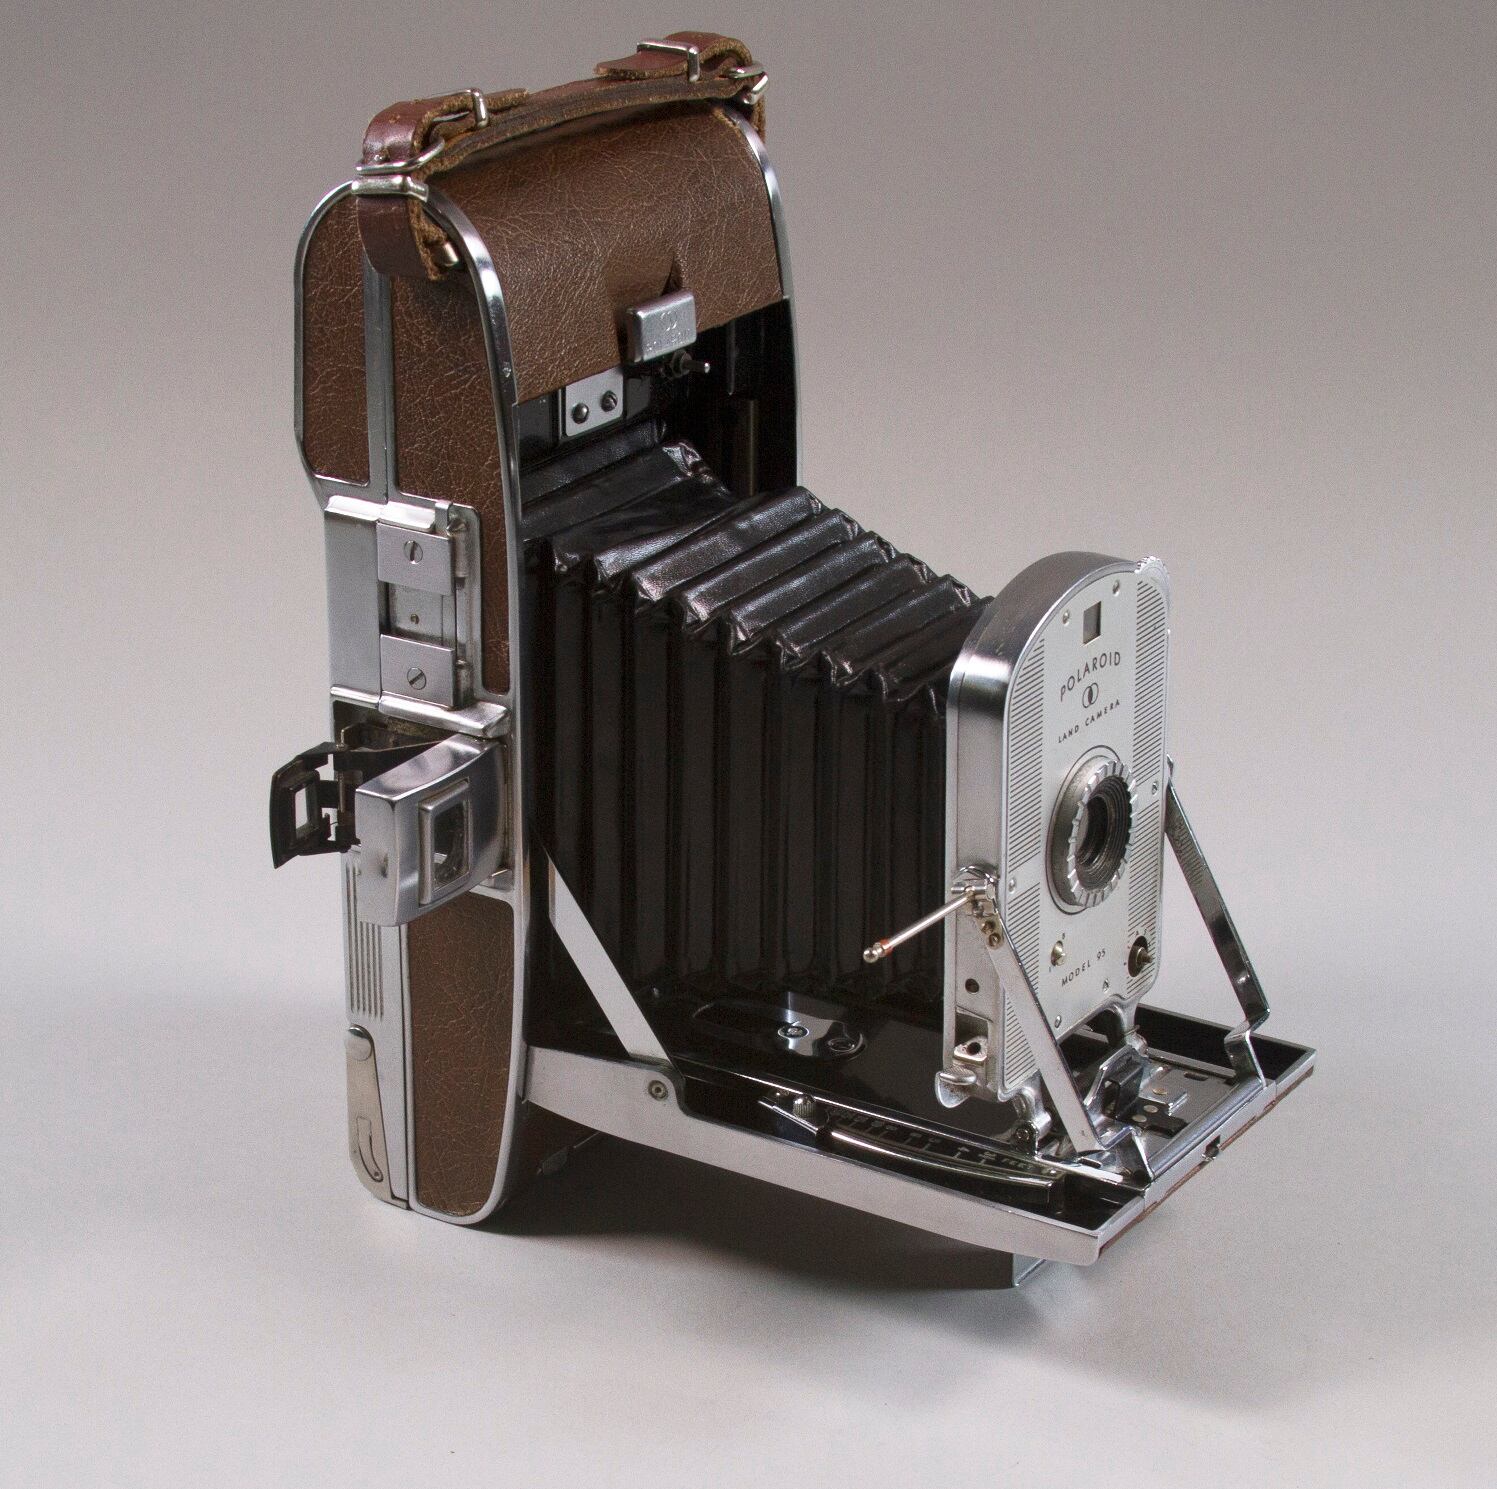 La primera cámara Polaroid que se comercializó, el modelo 95, de 1948.